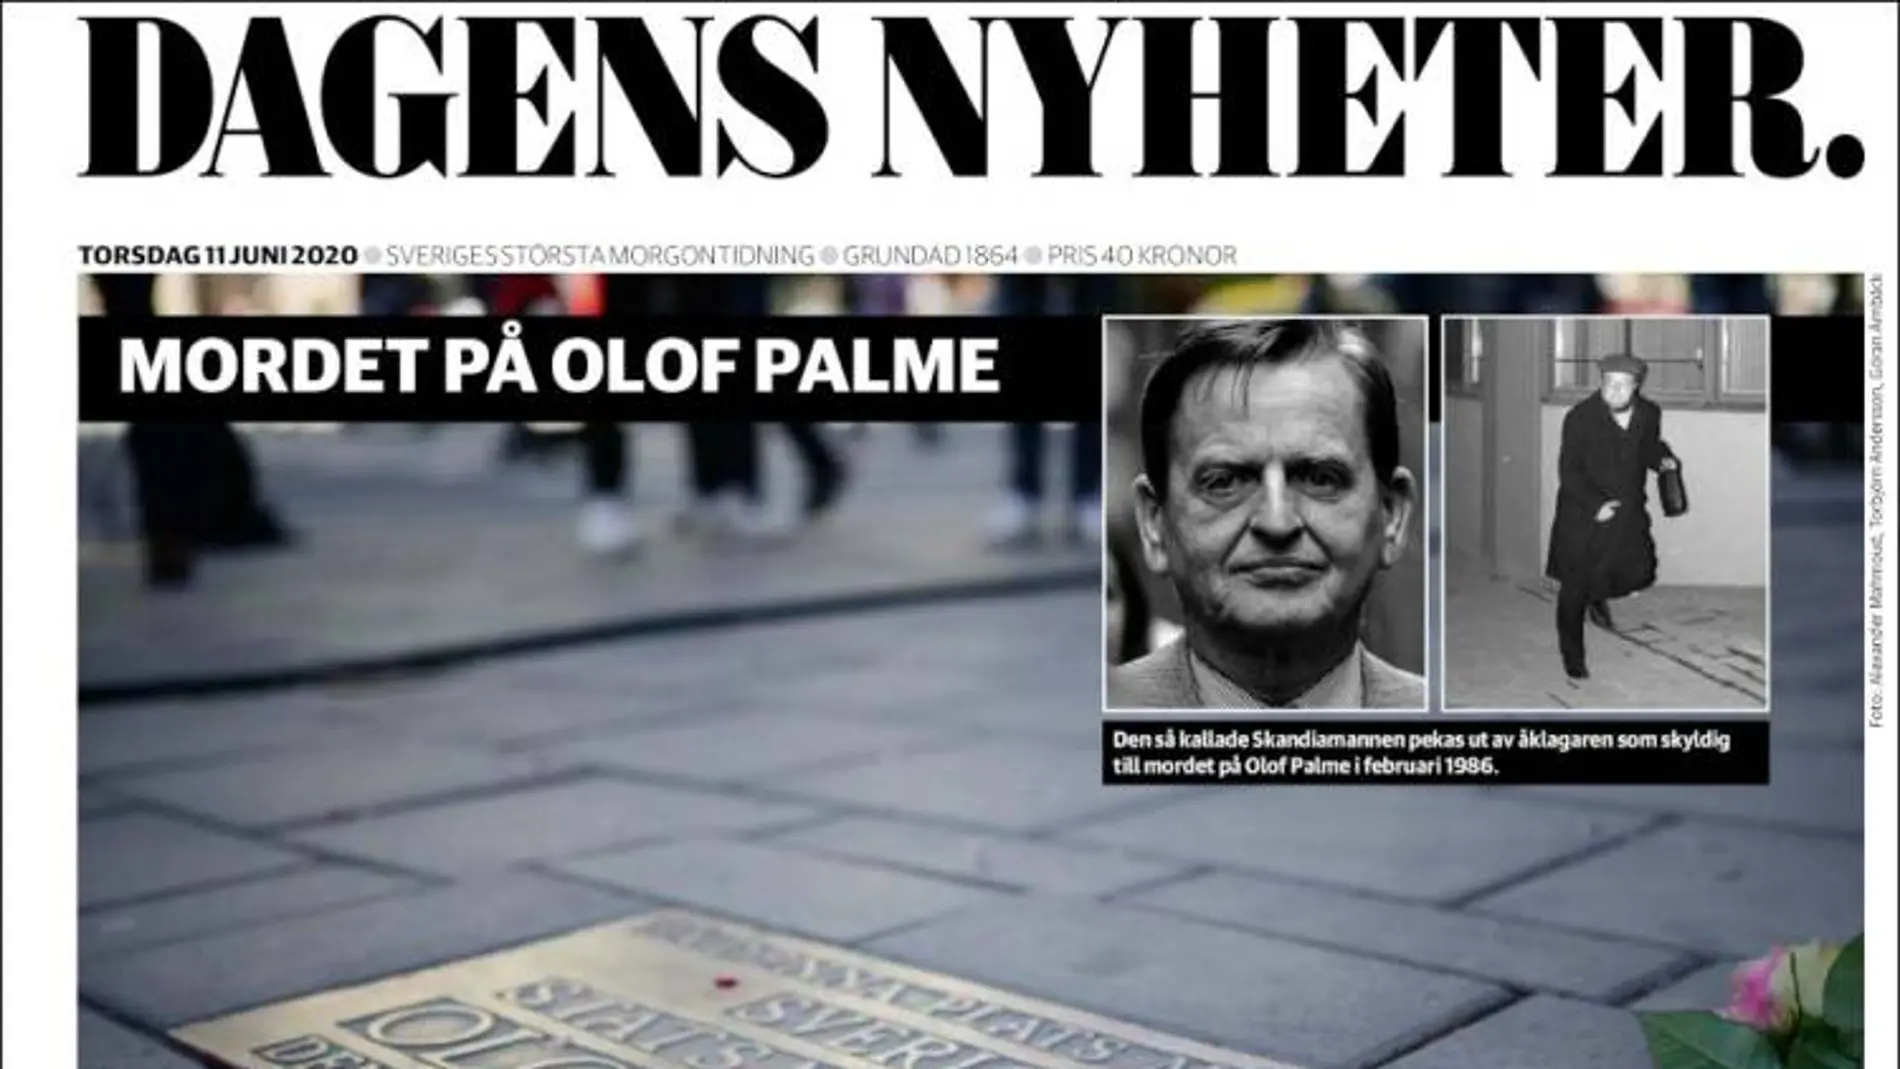 En su portada de este jueves el diario sueco "Dagens Nyheter" lamenta que los interrogantes sobre el magnicidio de Olof Palme permanecen 34 años después